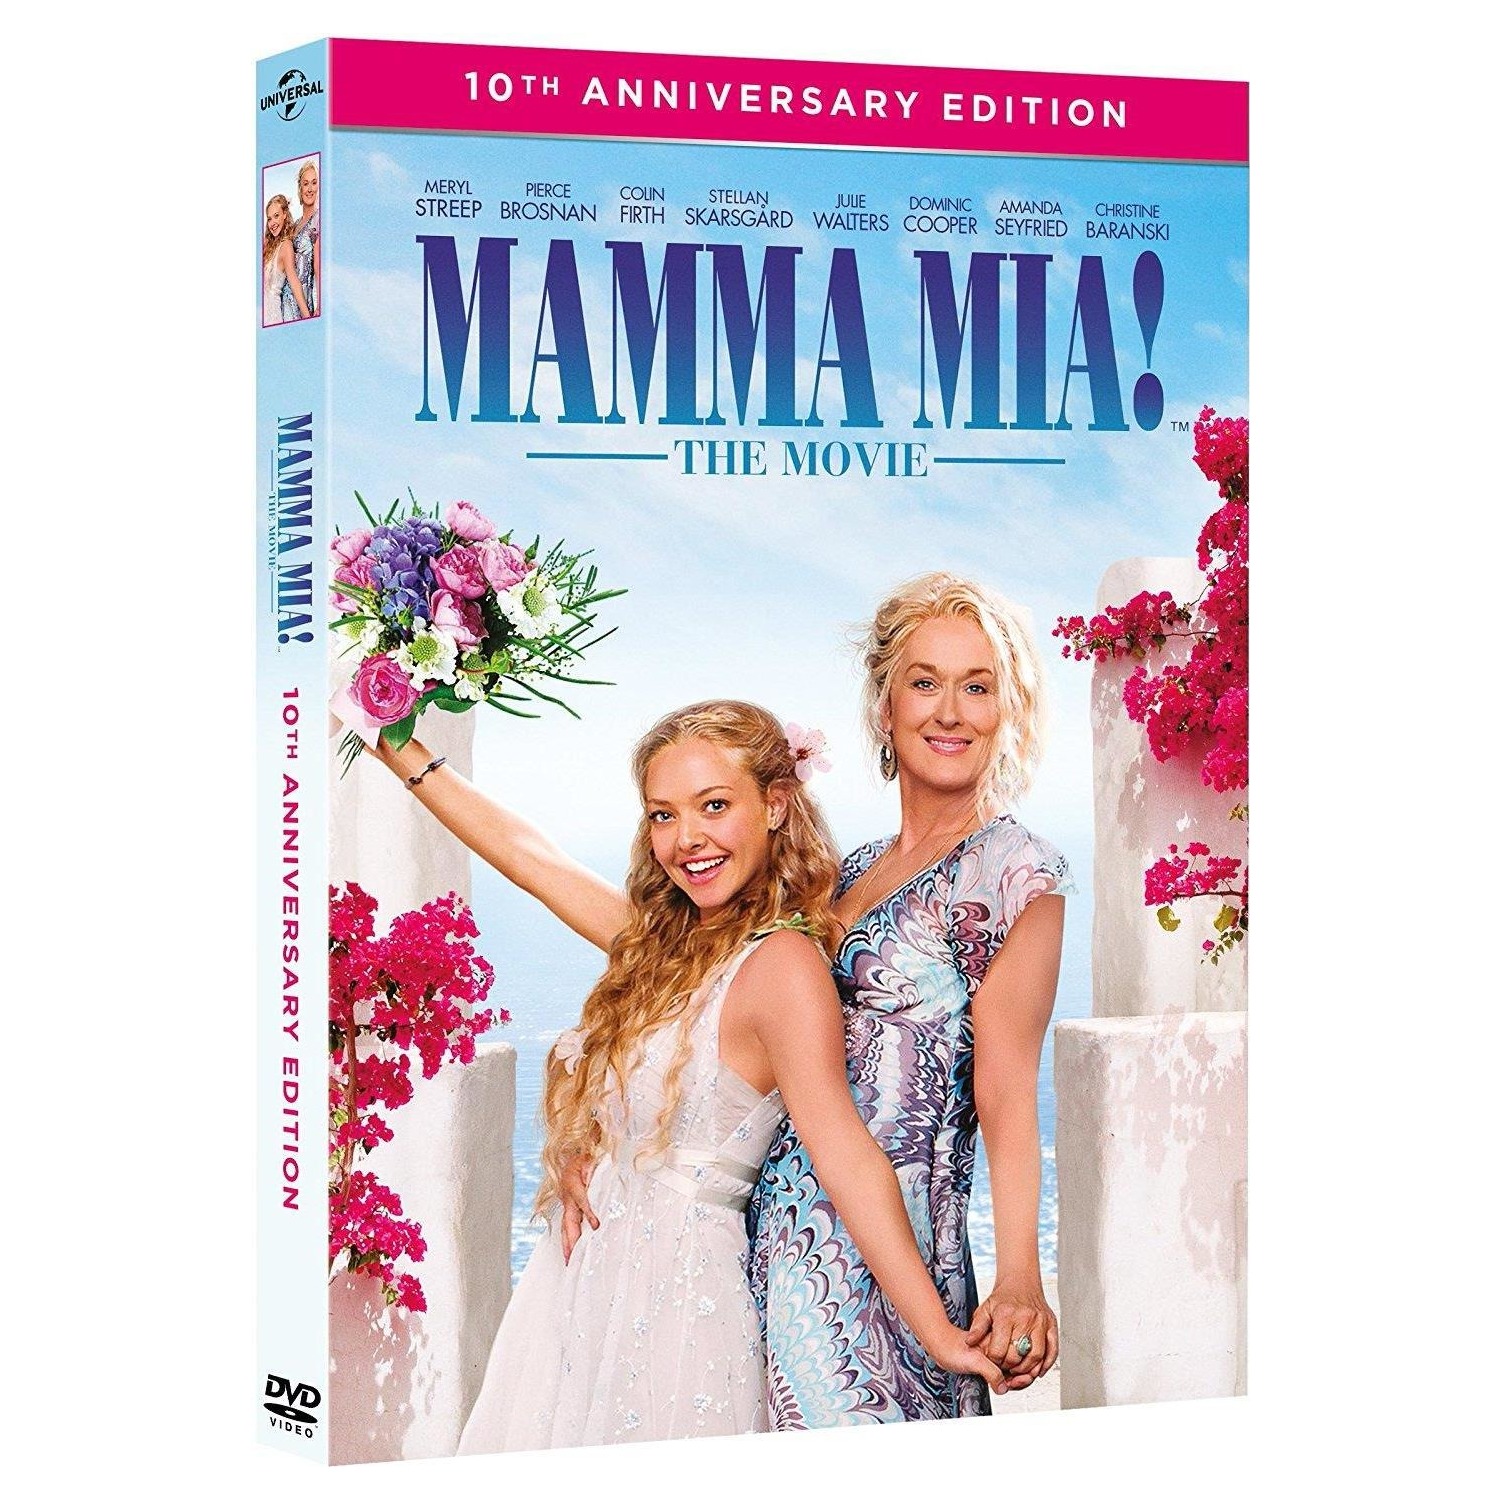 Immagine per DVD Mamma mia! 10TH anniversary edition da DIMOStore